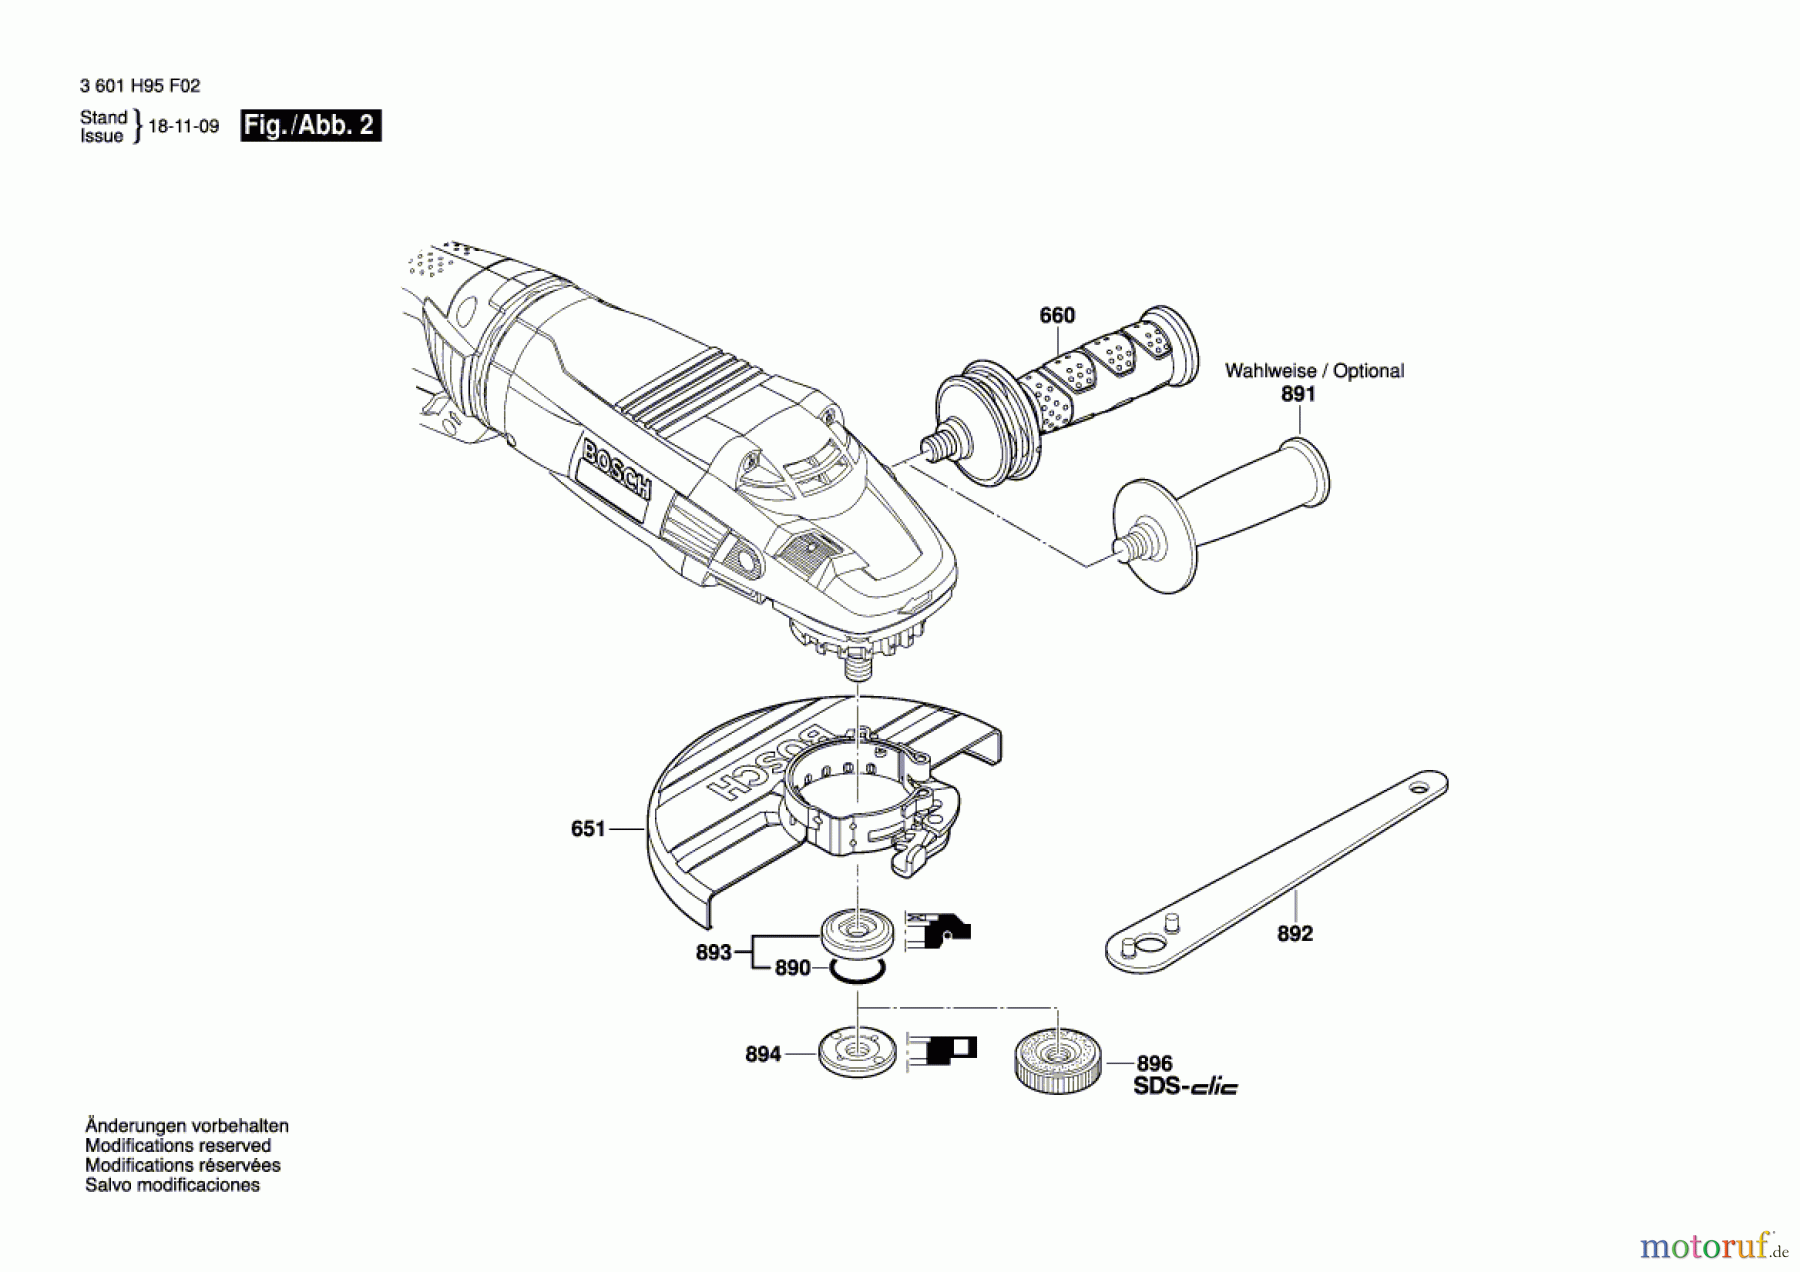  Bosch Werkzeug Winkelschleifer GWS 26-230 LVI Seite 2